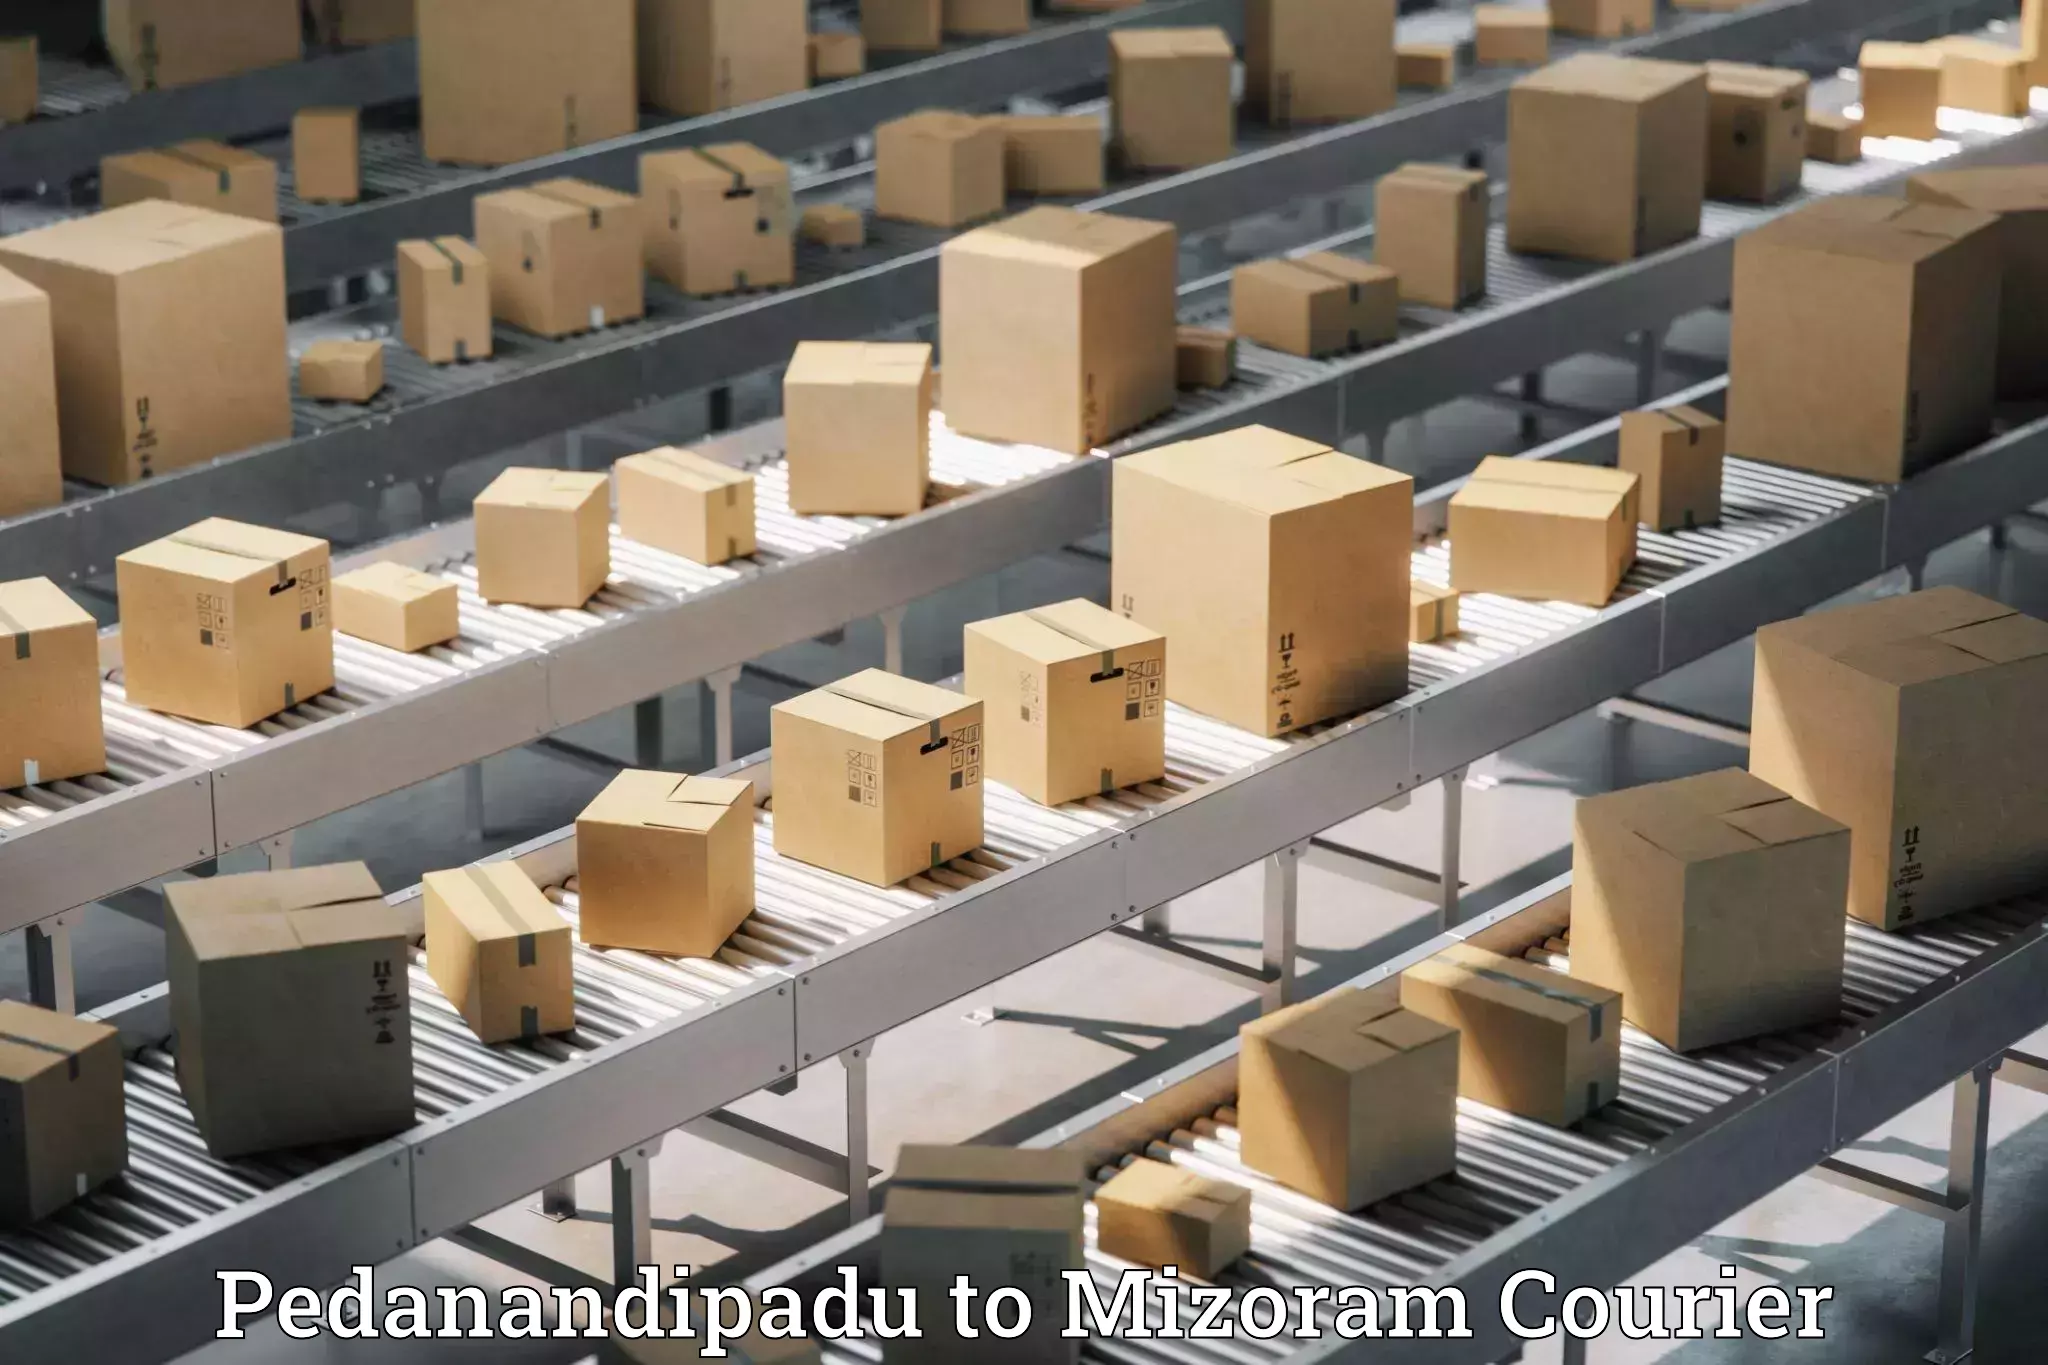 Seamless shipping experience Pedanandipadu to Mizoram